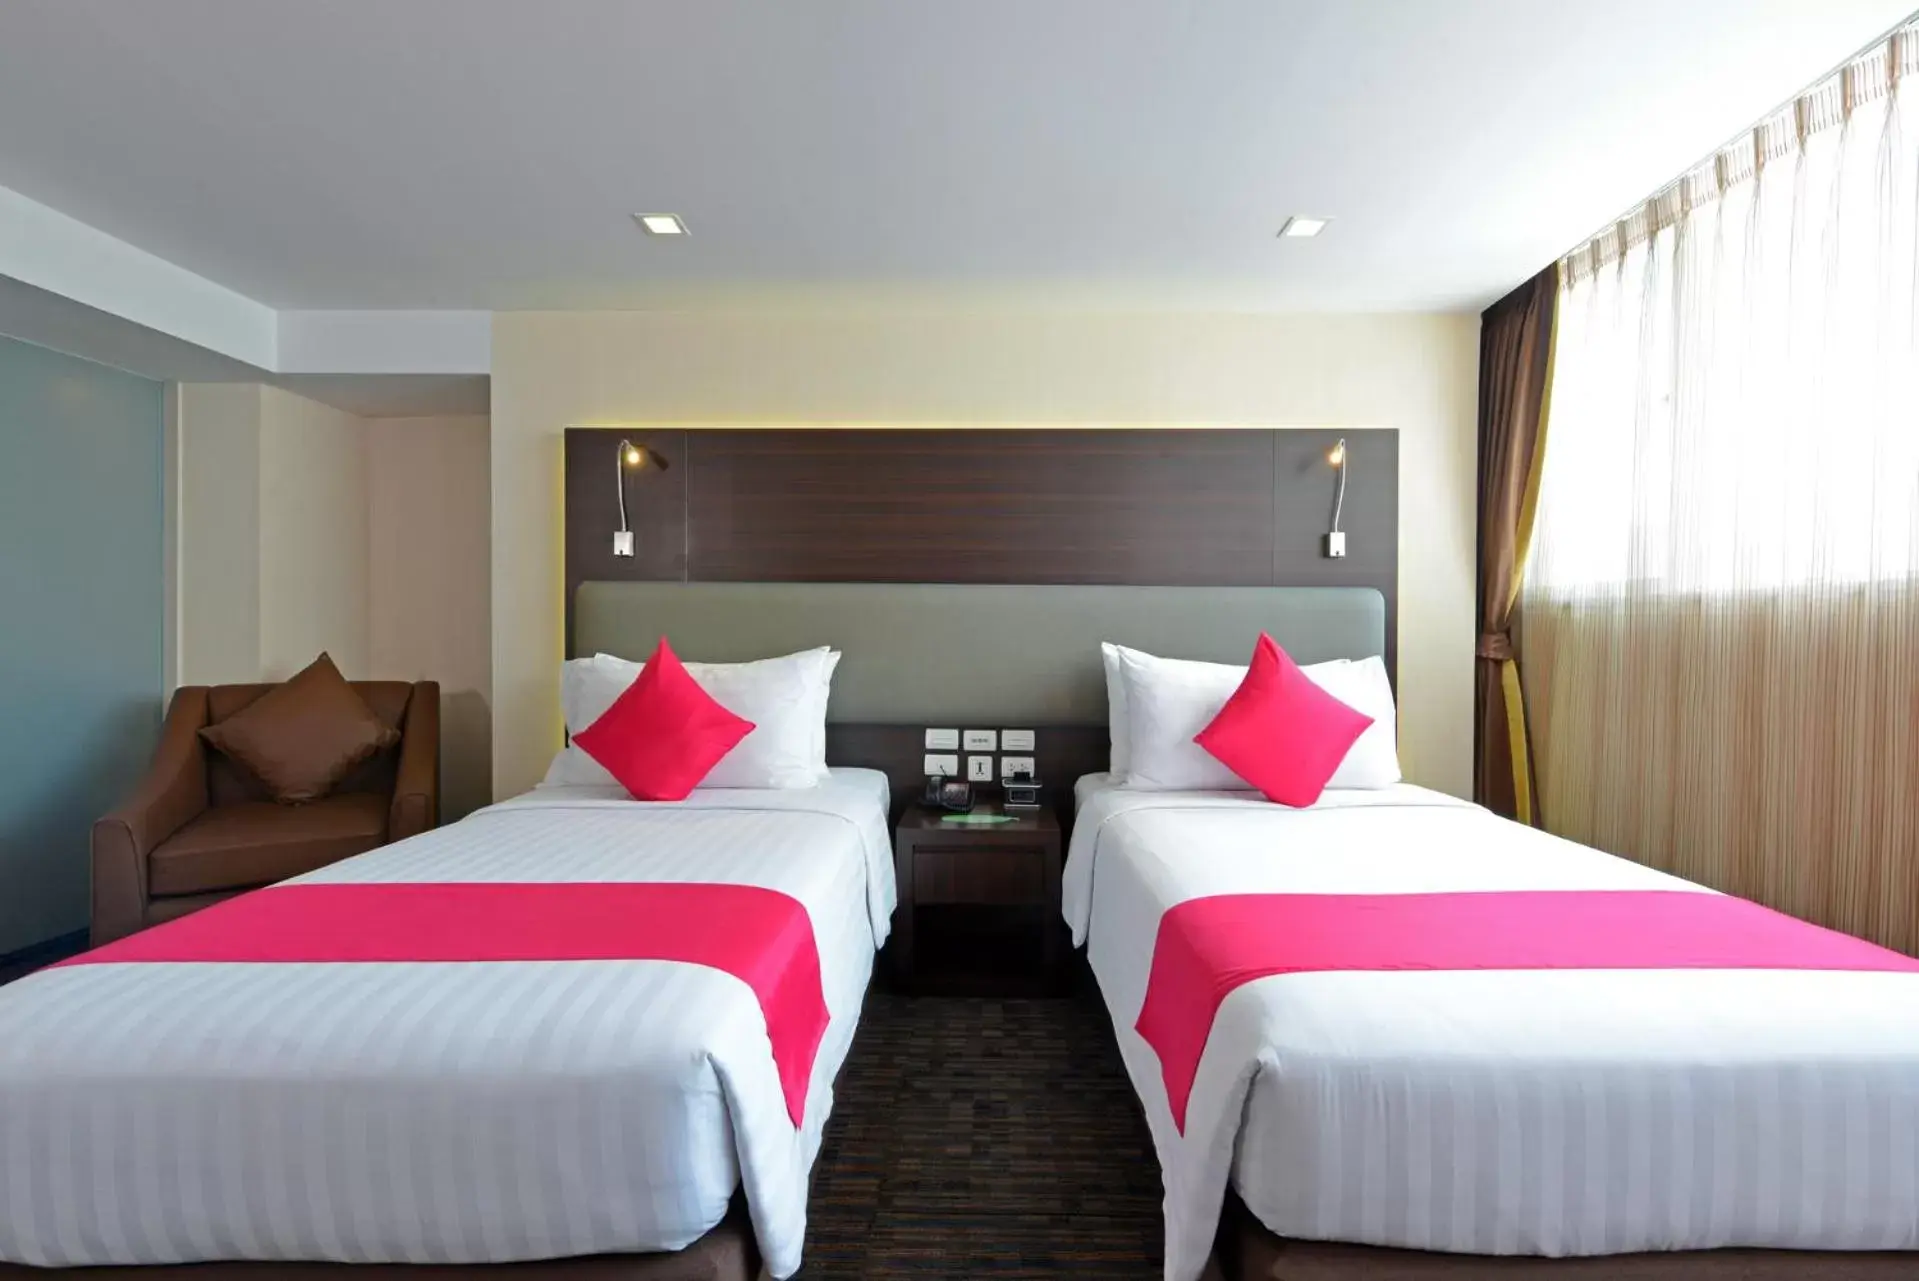 Bedroom, Bed in Hotel Royal Bangkok@Chinatown